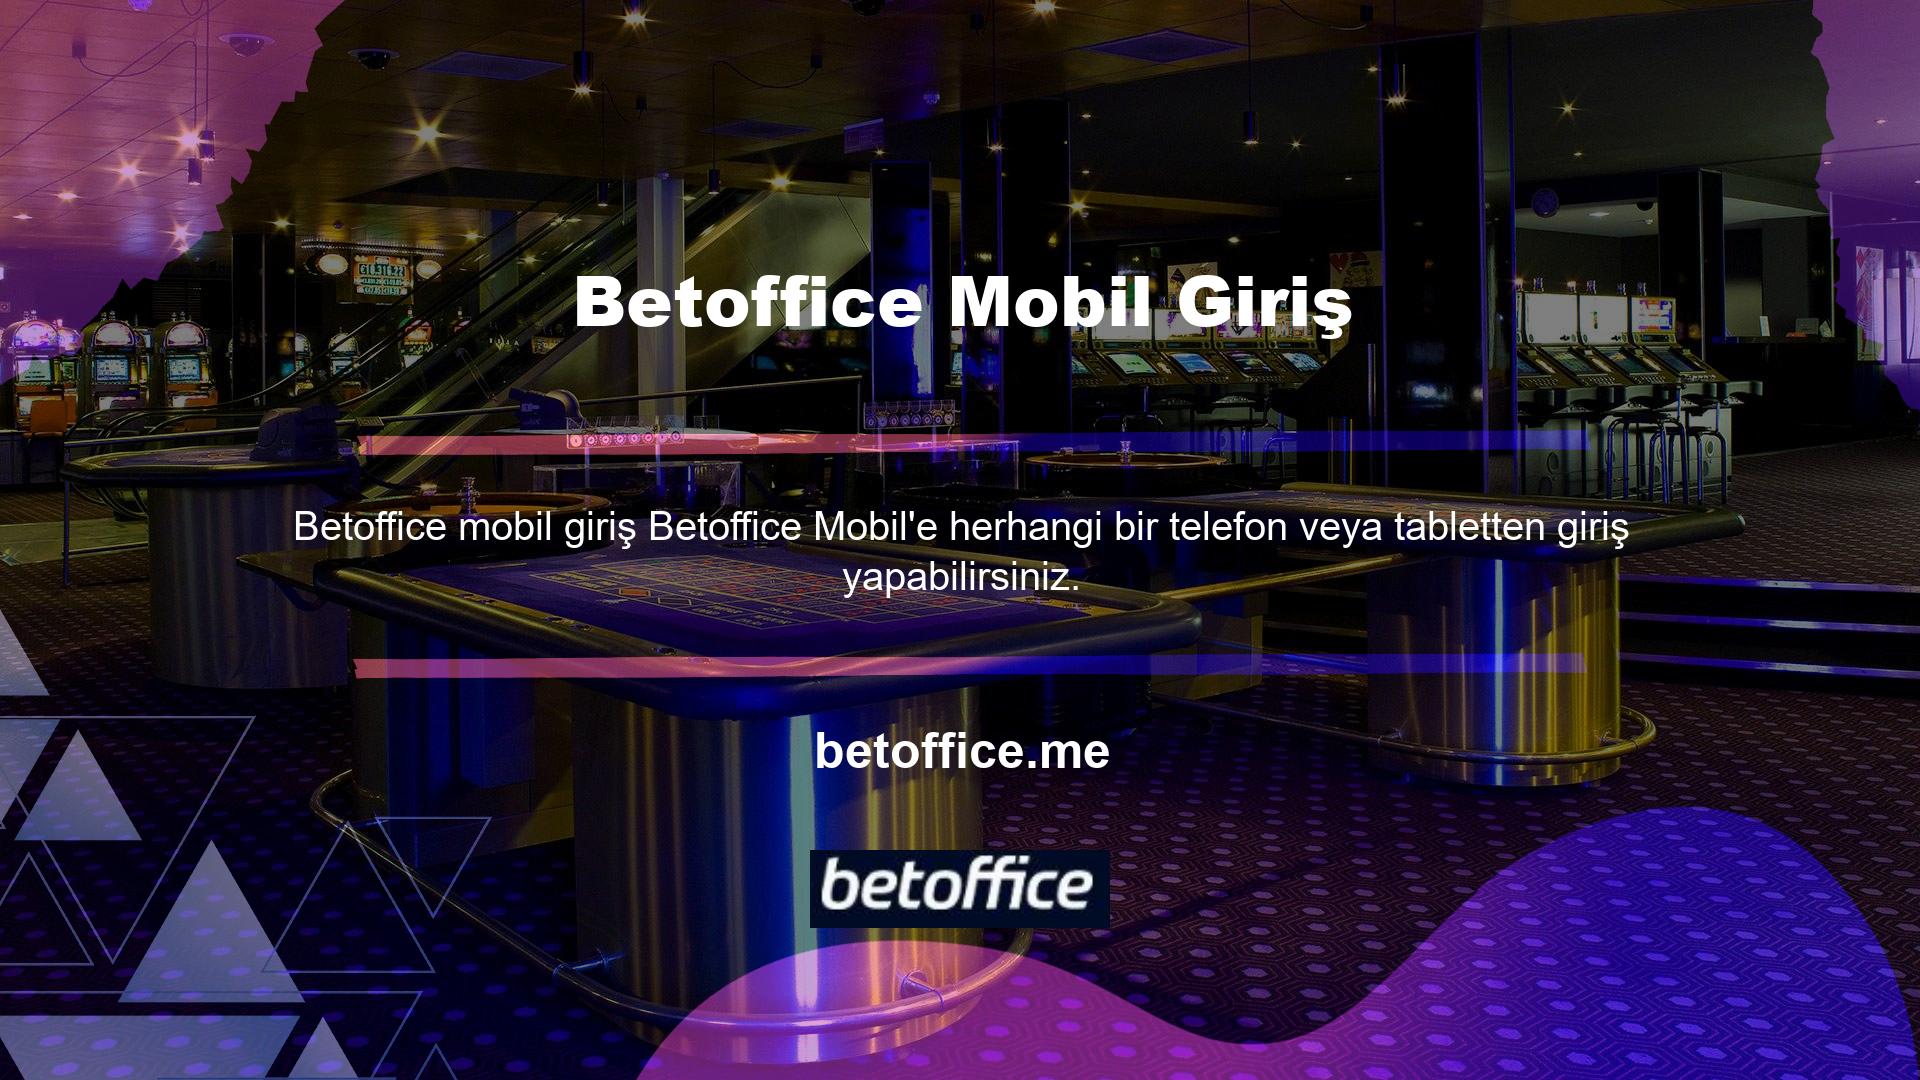 Betoffice mobil web sitesi Android cihazlar için kullanılabilir